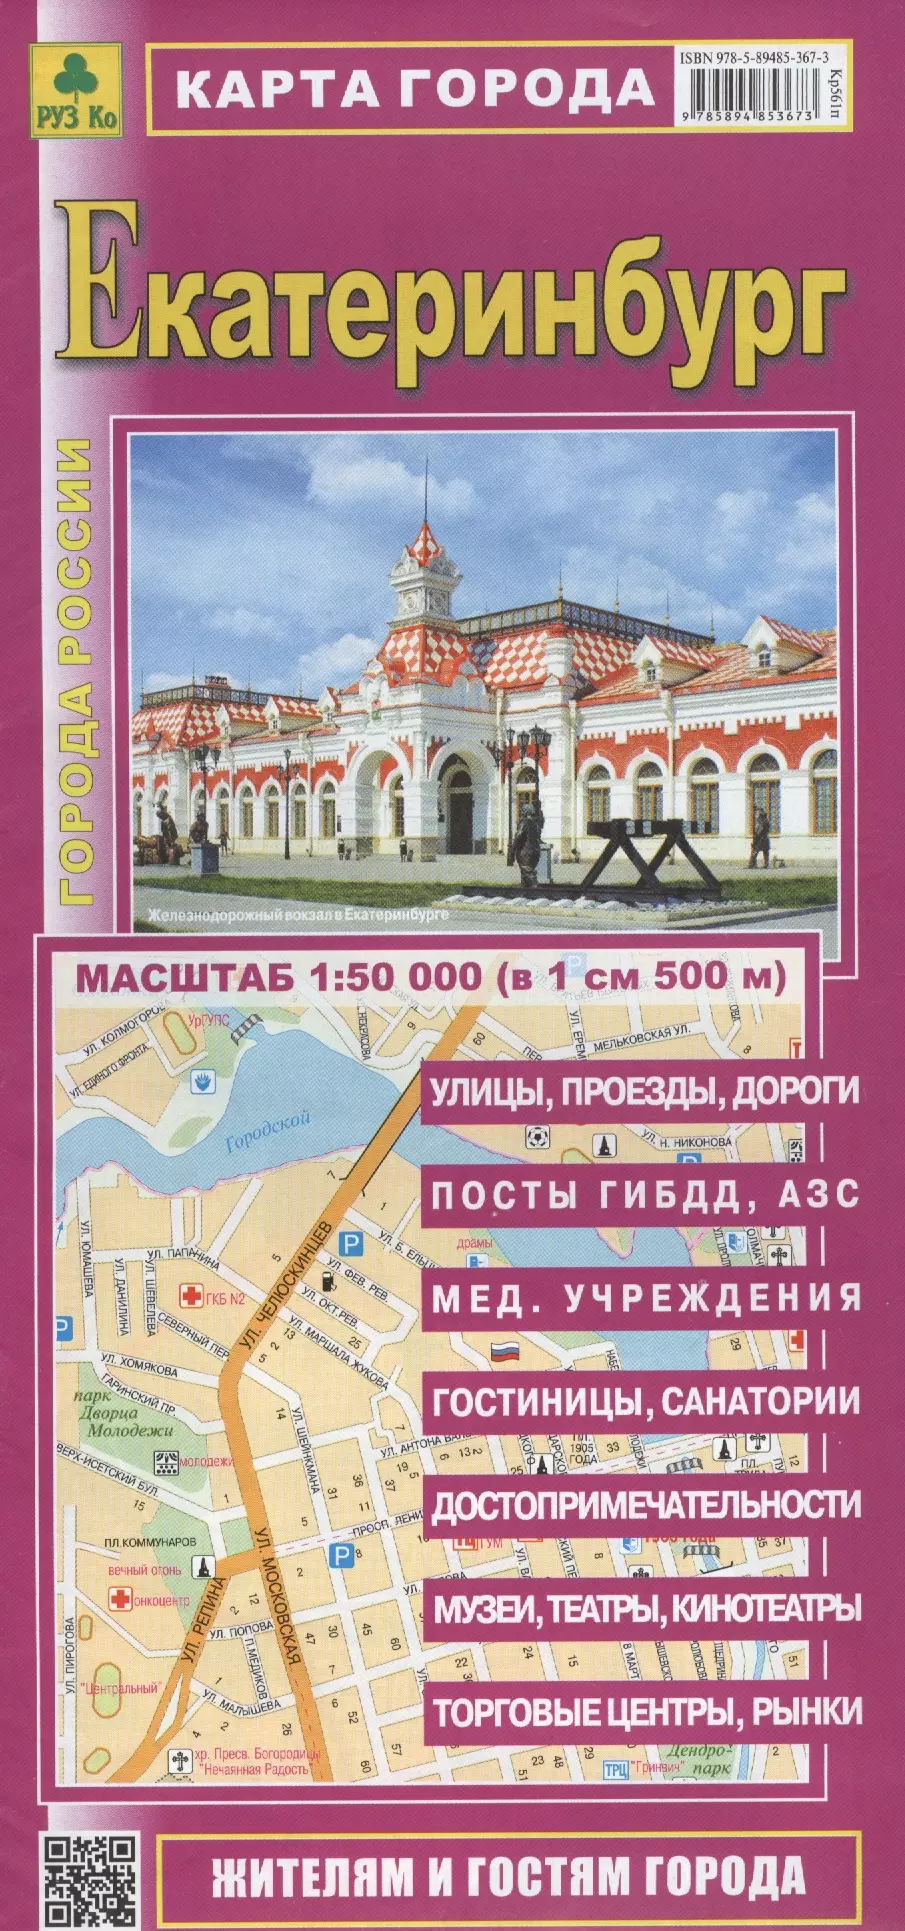  - Карта г. Екатеринбург (1:50 тыс.) (Кр561п) (раскл.)